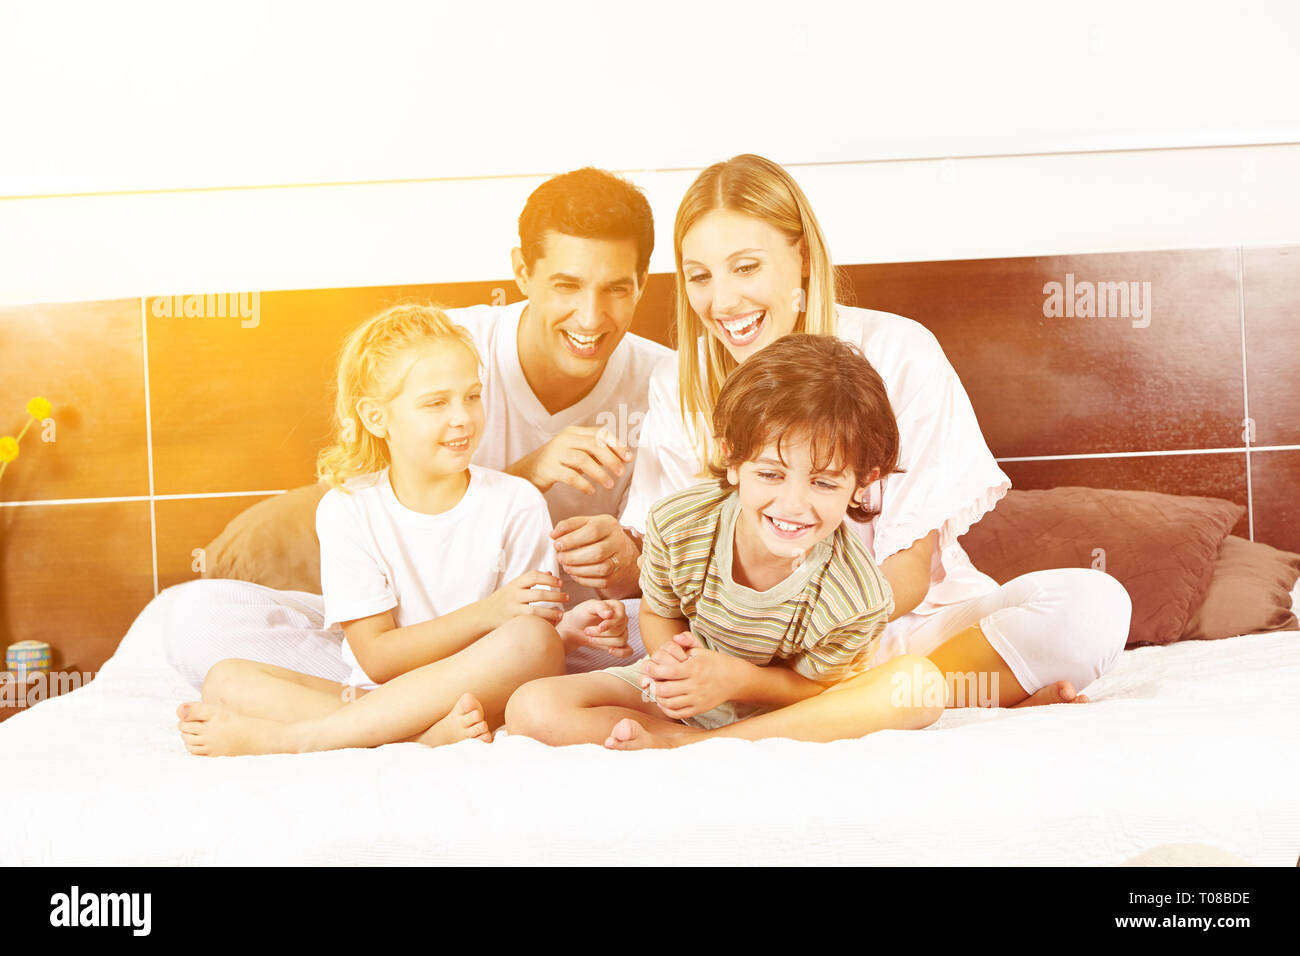 Familia de risa está sentado en la cama con dos niños y cosquilleo mutuamente Foto de stock